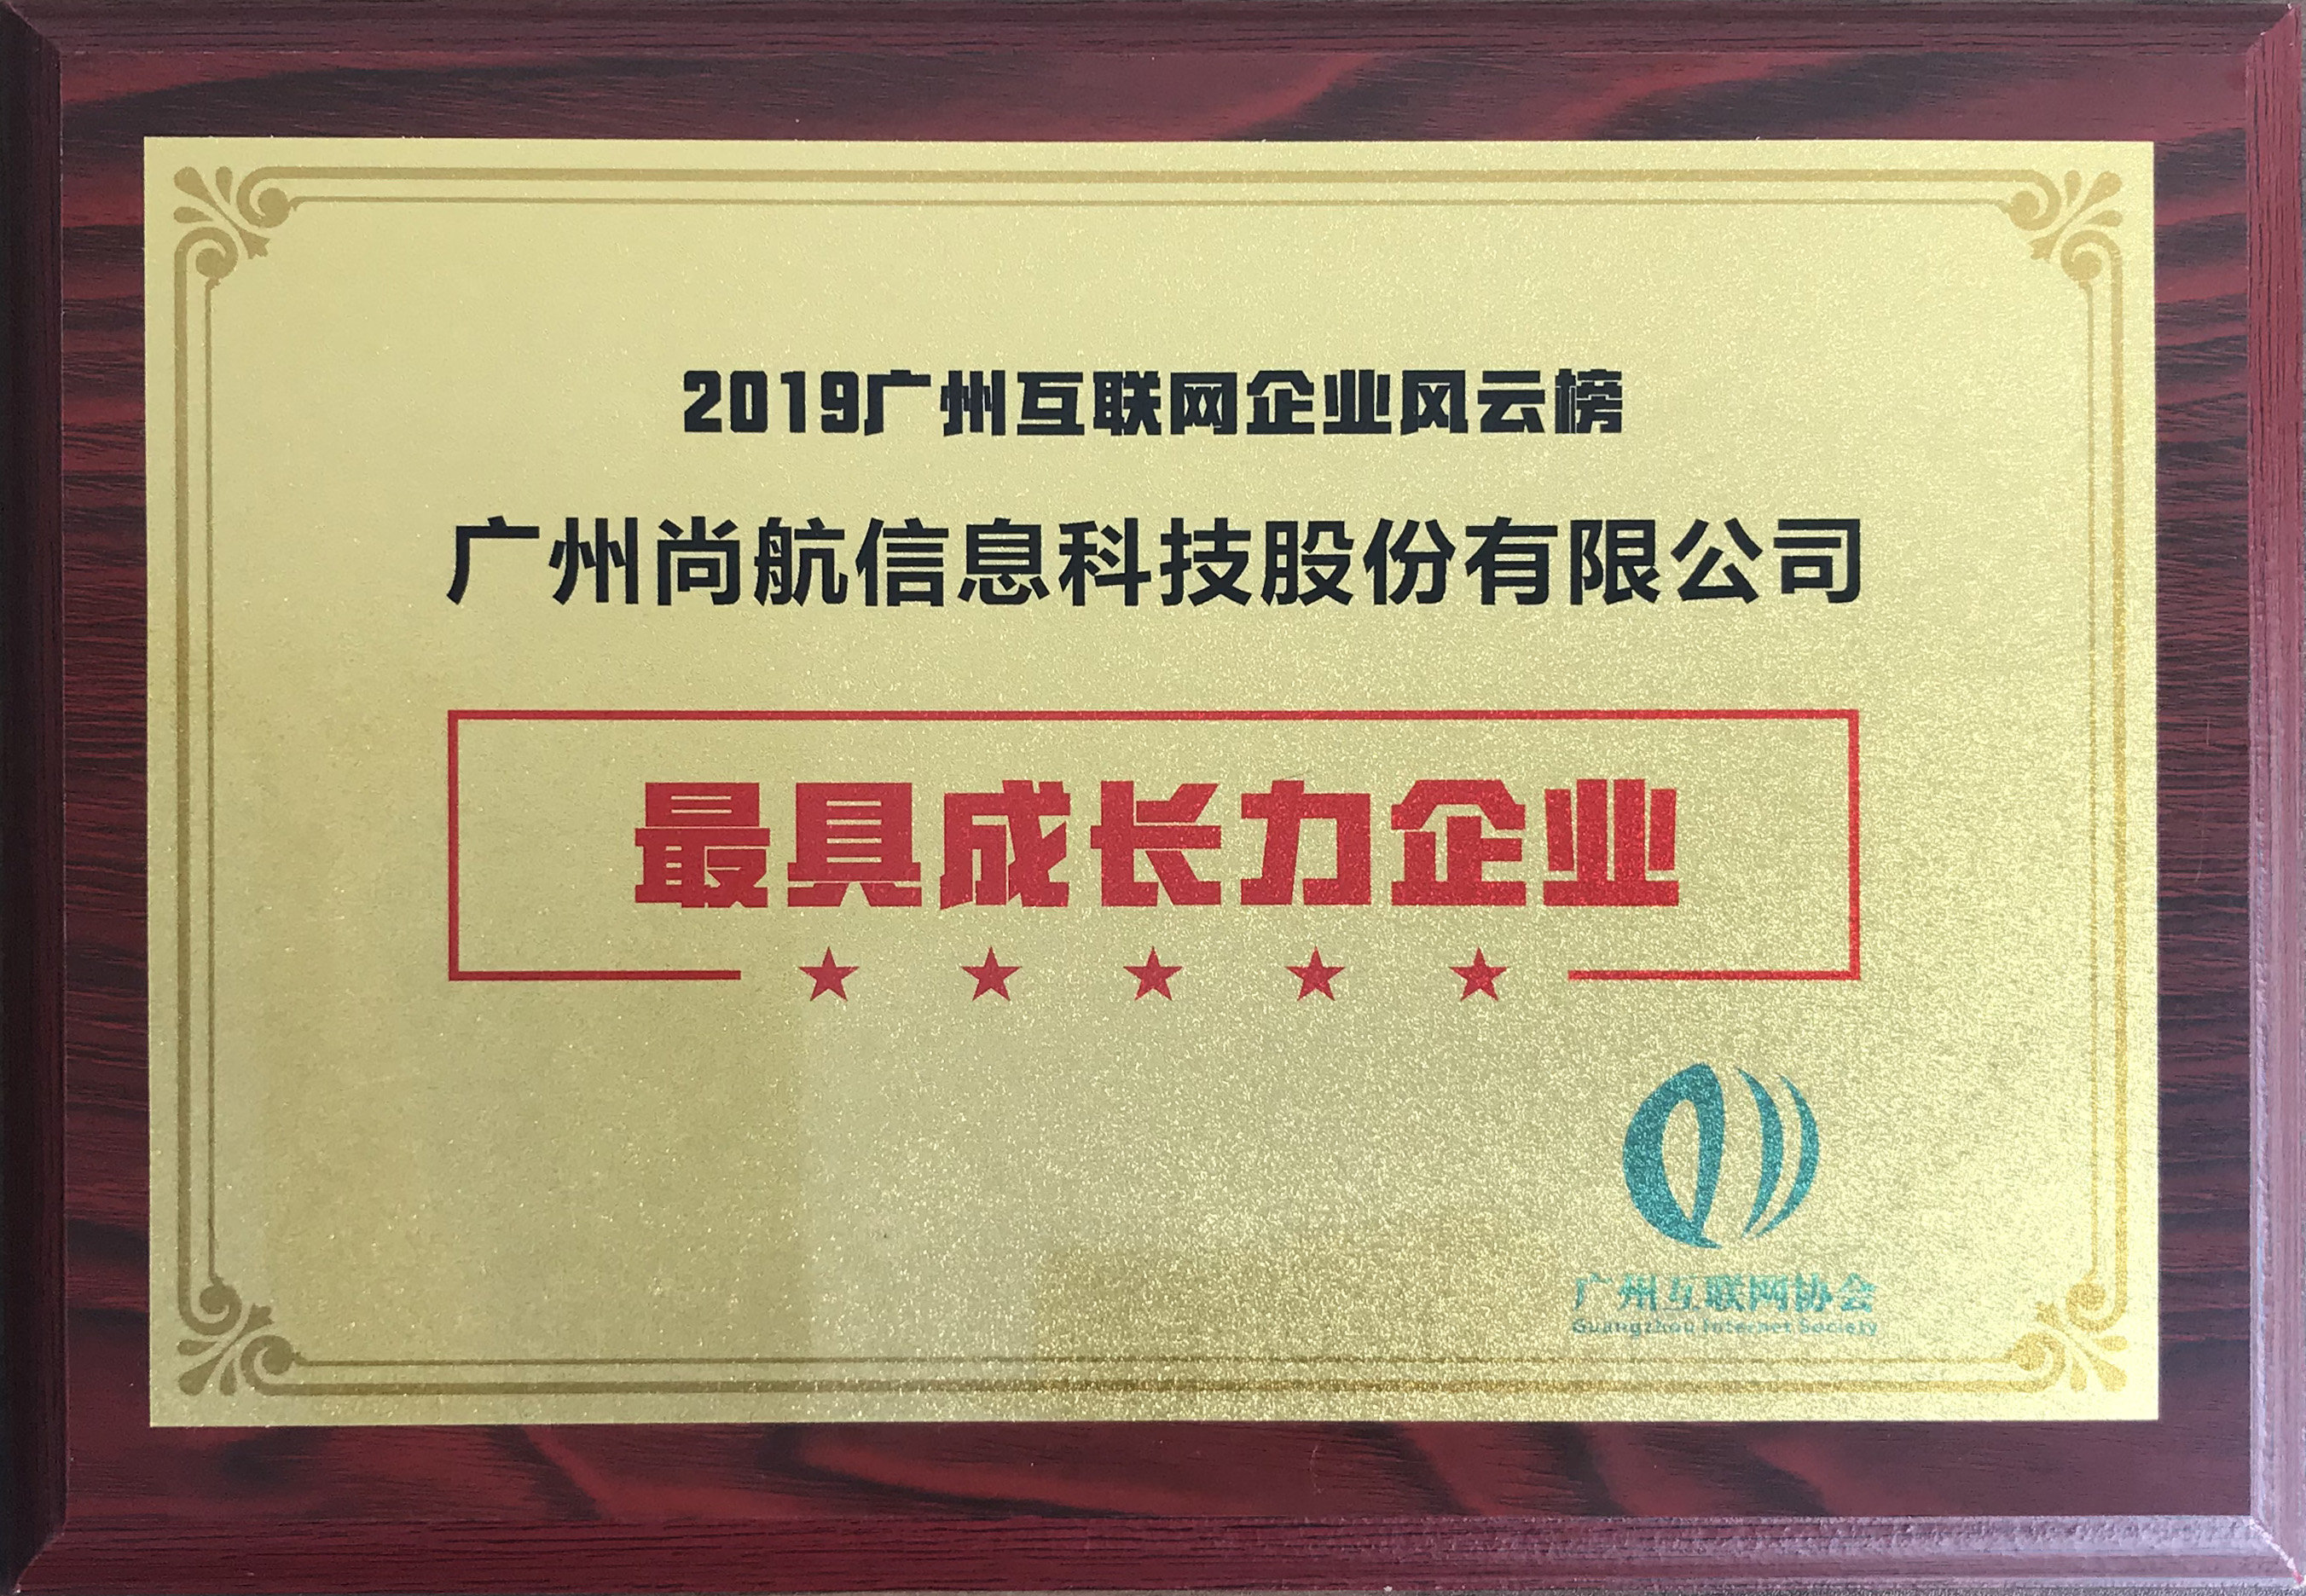 尚航科技获评2019年度“最具成长力企业”奖